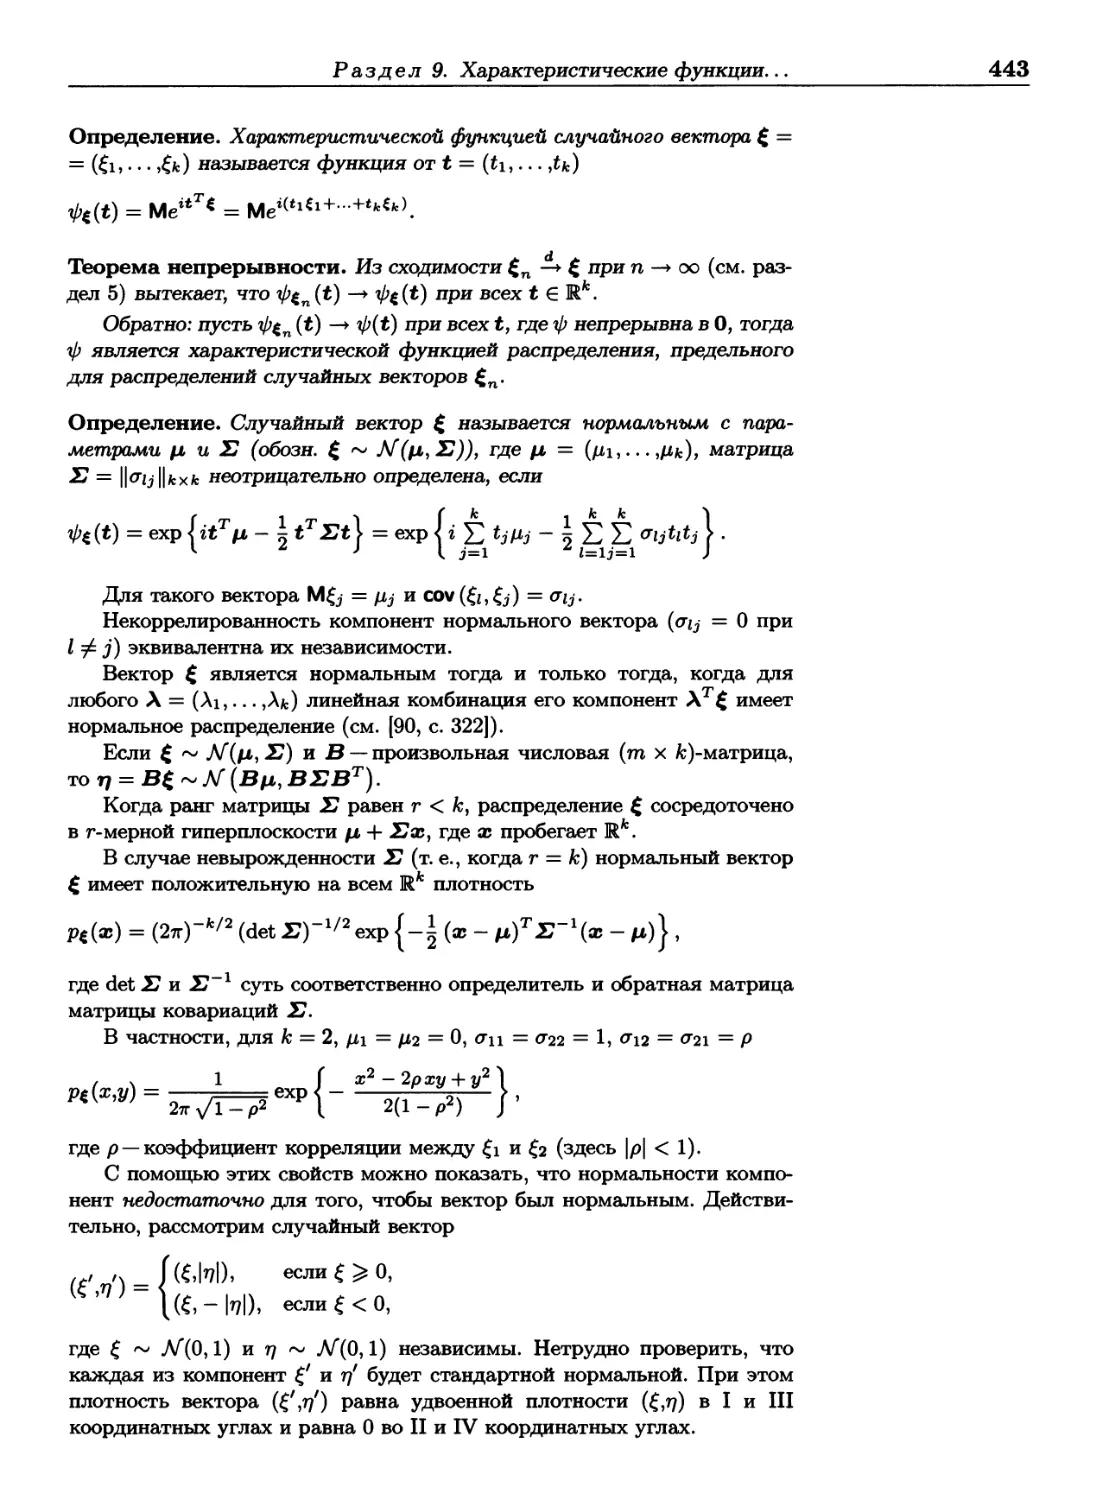 Раздел 10. Элементы матричного исчисления